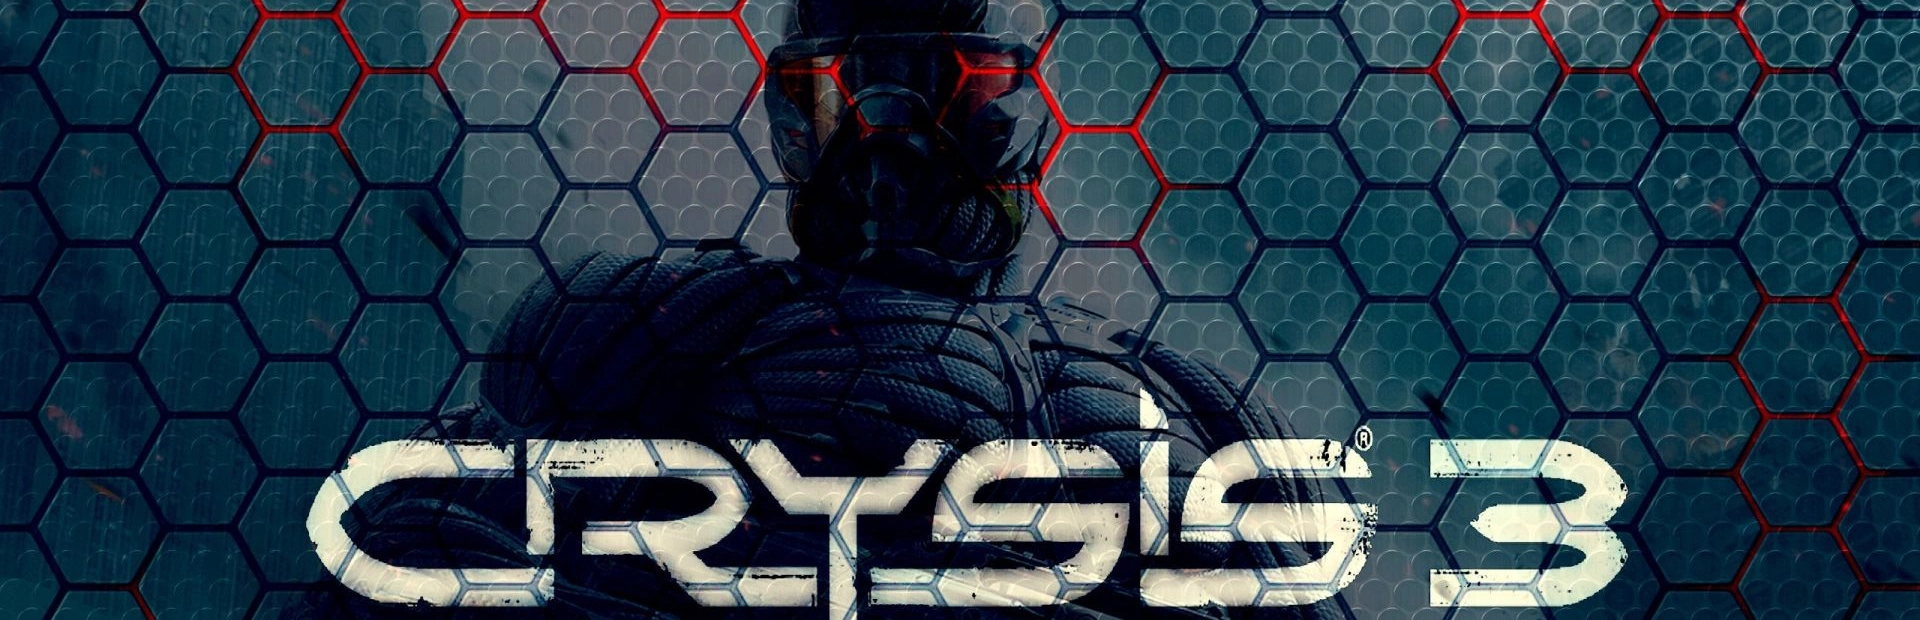 Crysis 3.banner3